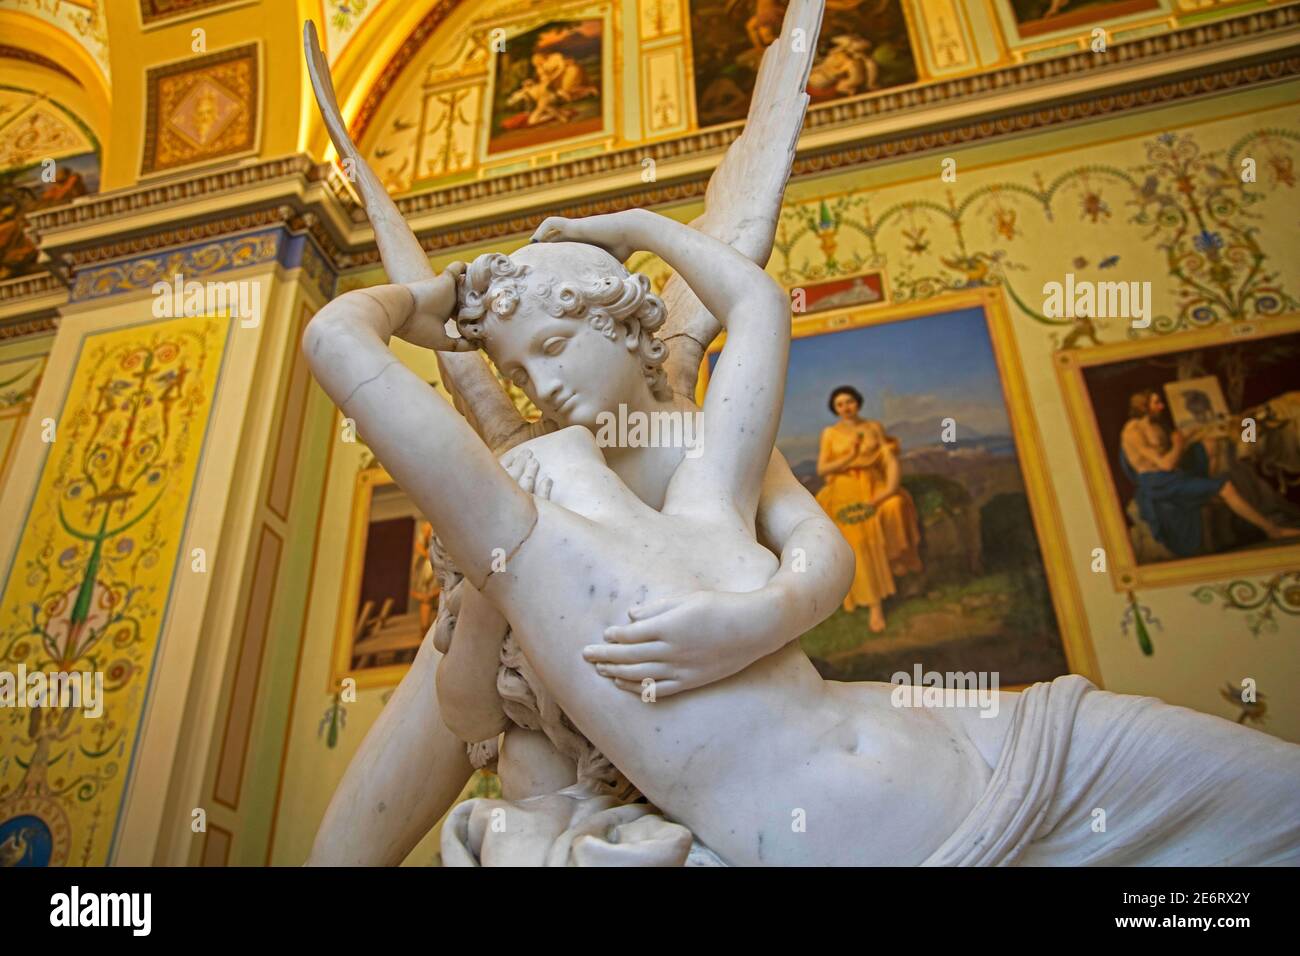 Escultura neoclásica en la Galería de la Historia de la pintura antigua en el Palacio de Invierno / Museo Estatal del Hermitage en San Petersburgo, Rusia Foto de stock